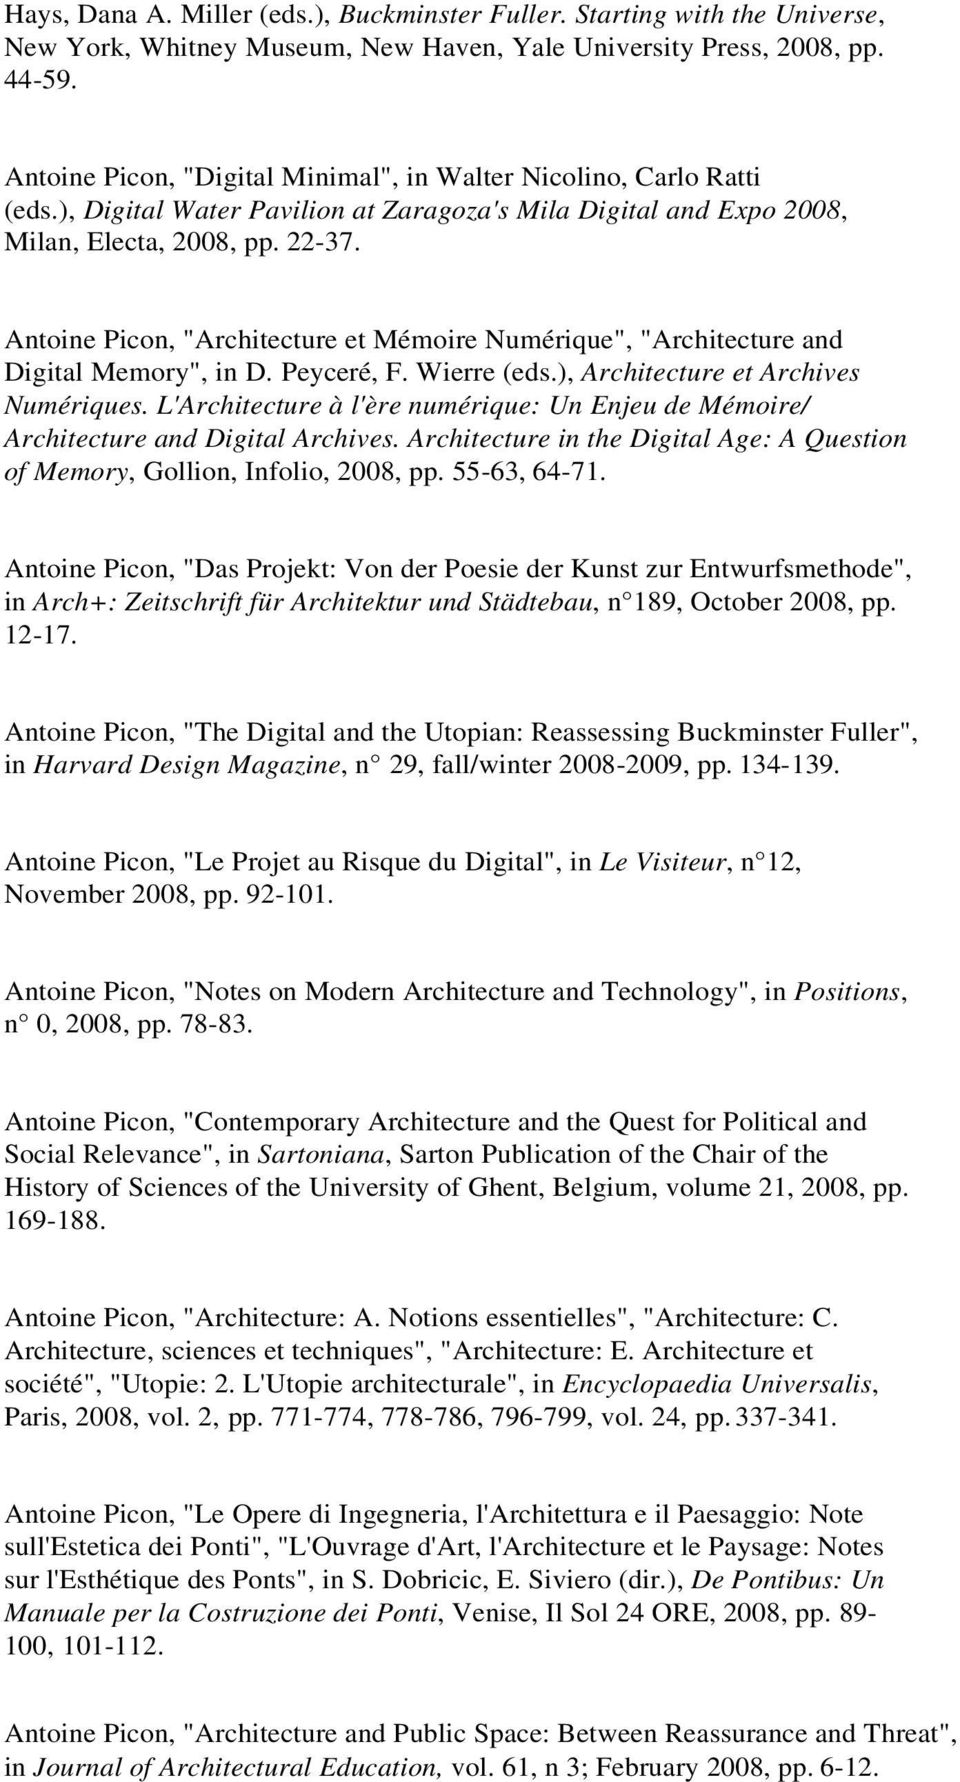 Antoine Picon, "Architecture et Mémoire Numérique", "Architecture and Digital Memory", in D. Peyceré, F. Wierre (eds.), Architecture et Archives Numériques.